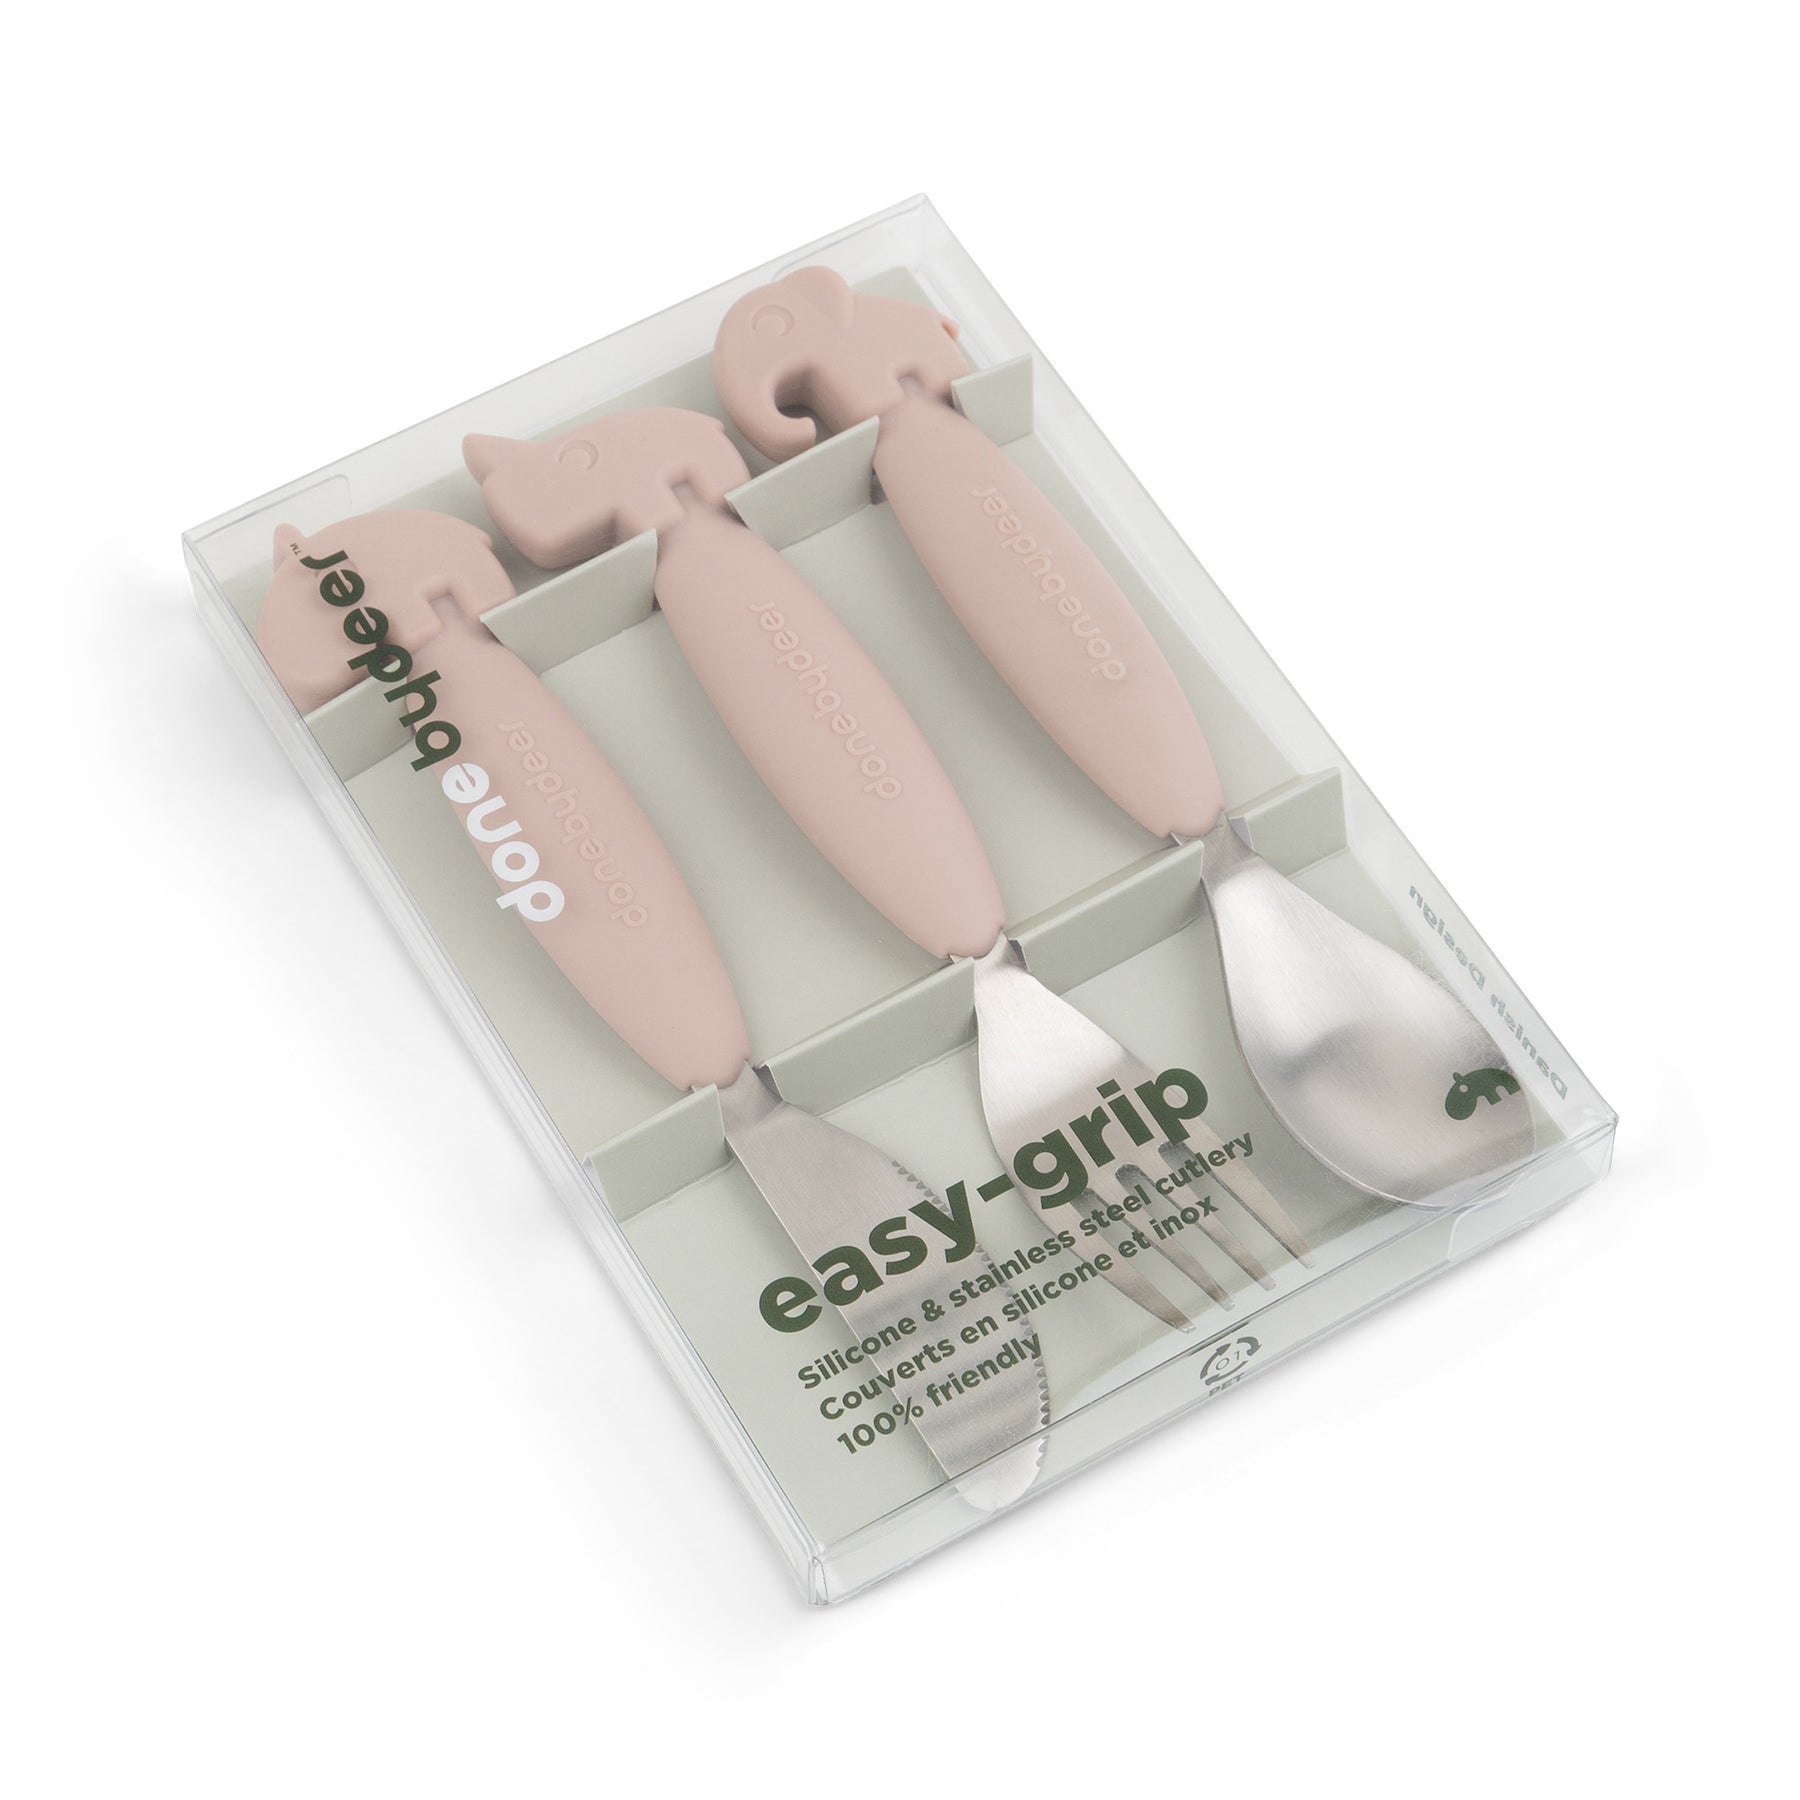 Easy-grip cutlery set - Deer friends - Powder - Packaging